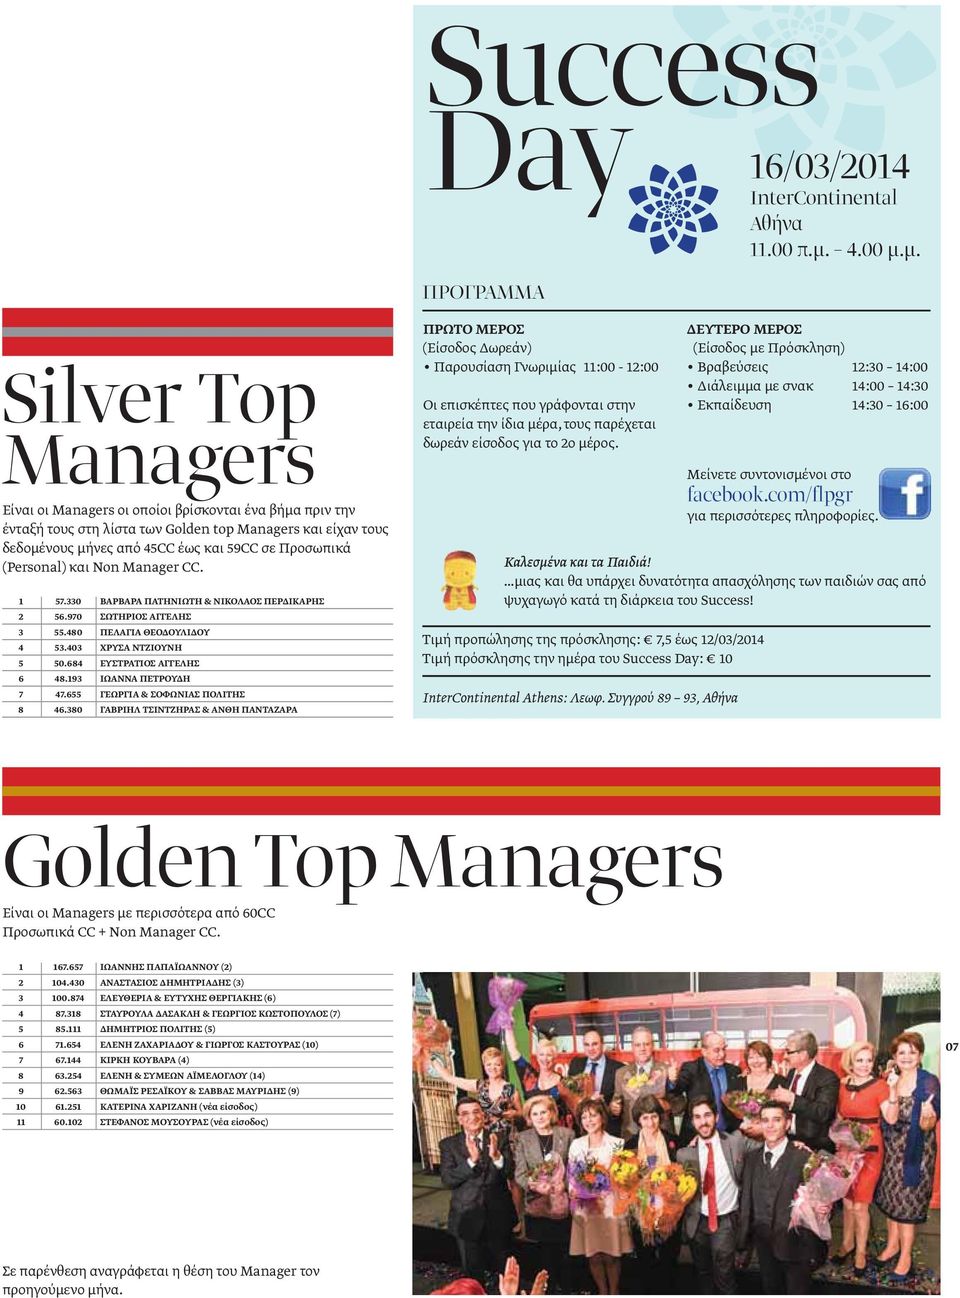 μ. Silver Τop Managers Είναι οι Managers οι οποίοι βρίσκονται ένα βήμα πριν την ένταξή τους στη λίστα των Golden top Managers και είχαν τους δεδομένους μήνες από 45CC έως και 59CC σε Προσωπικά